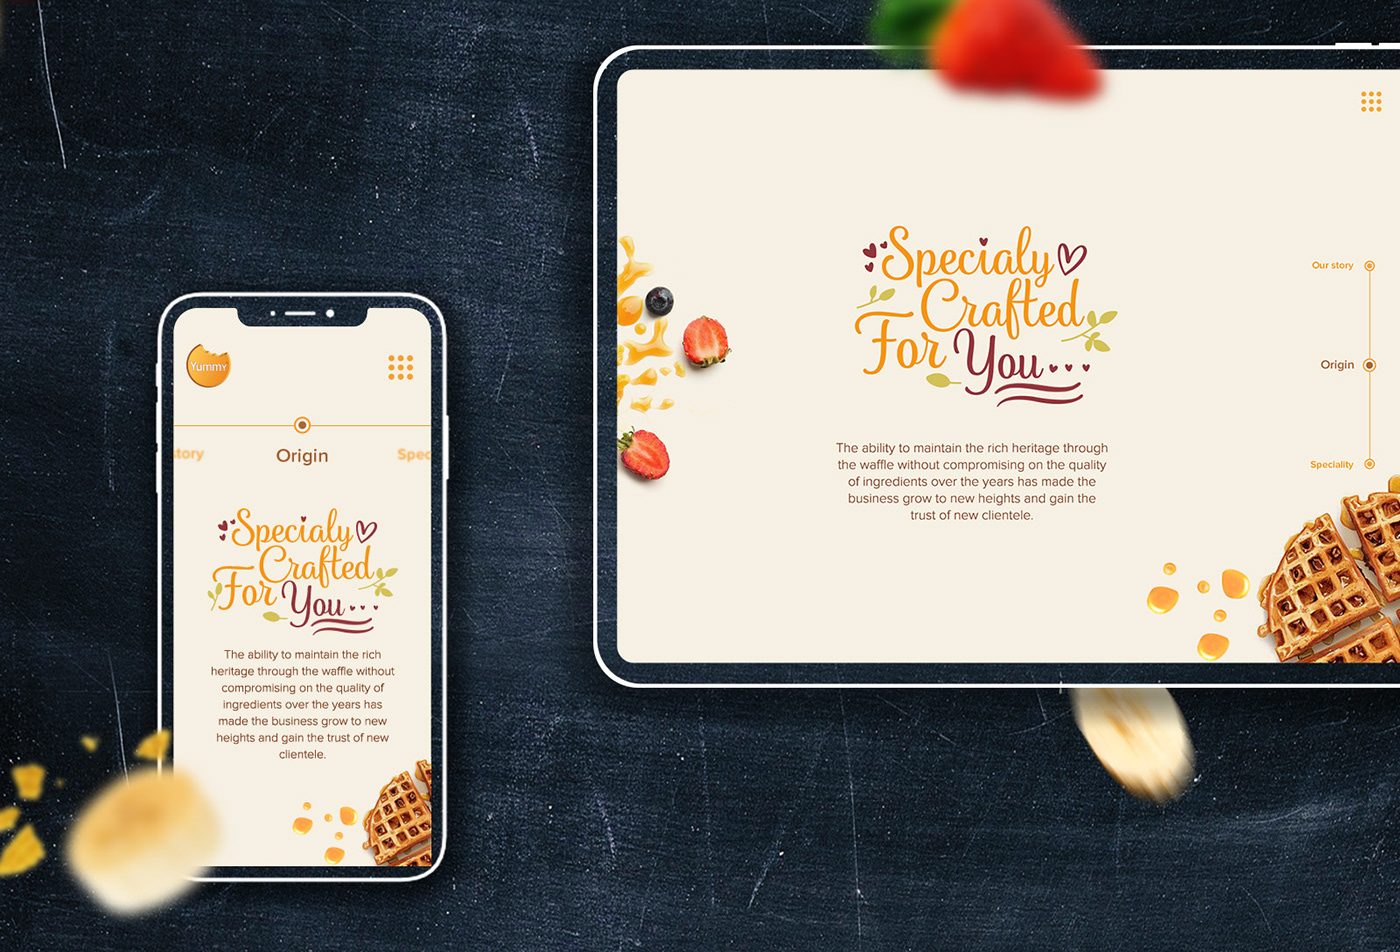 cafe designer dubai dubai restaurant Restaurant Website ui design waffle Web Design  yummy